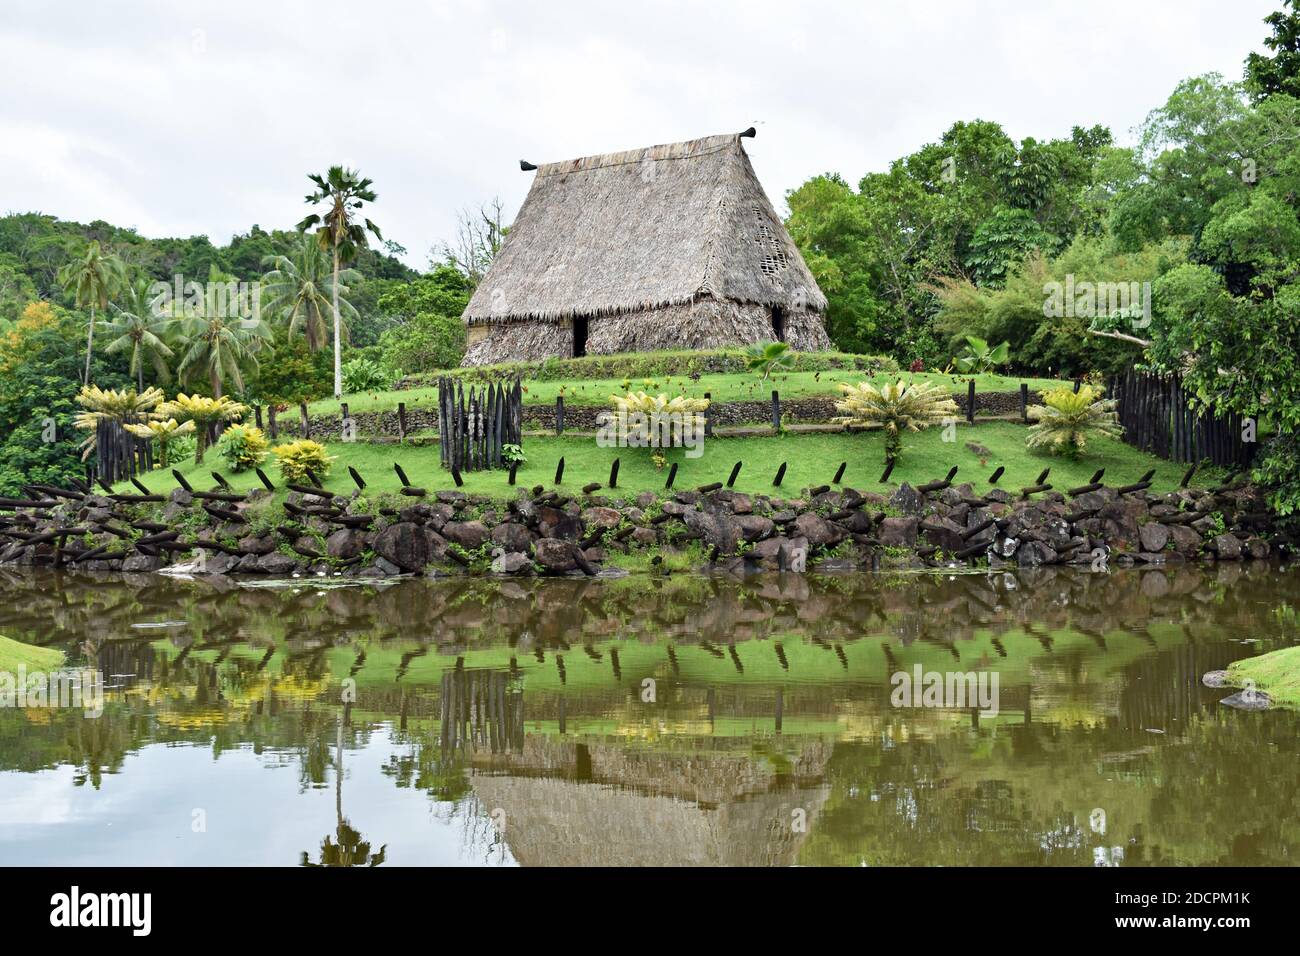 Le Bure Kalau (maison d'esprit) au Pacific Harbour Arts Village près de Suva aux Fidji. La maison est et la verdure se reflète dans un petit lac. Banque D'Images